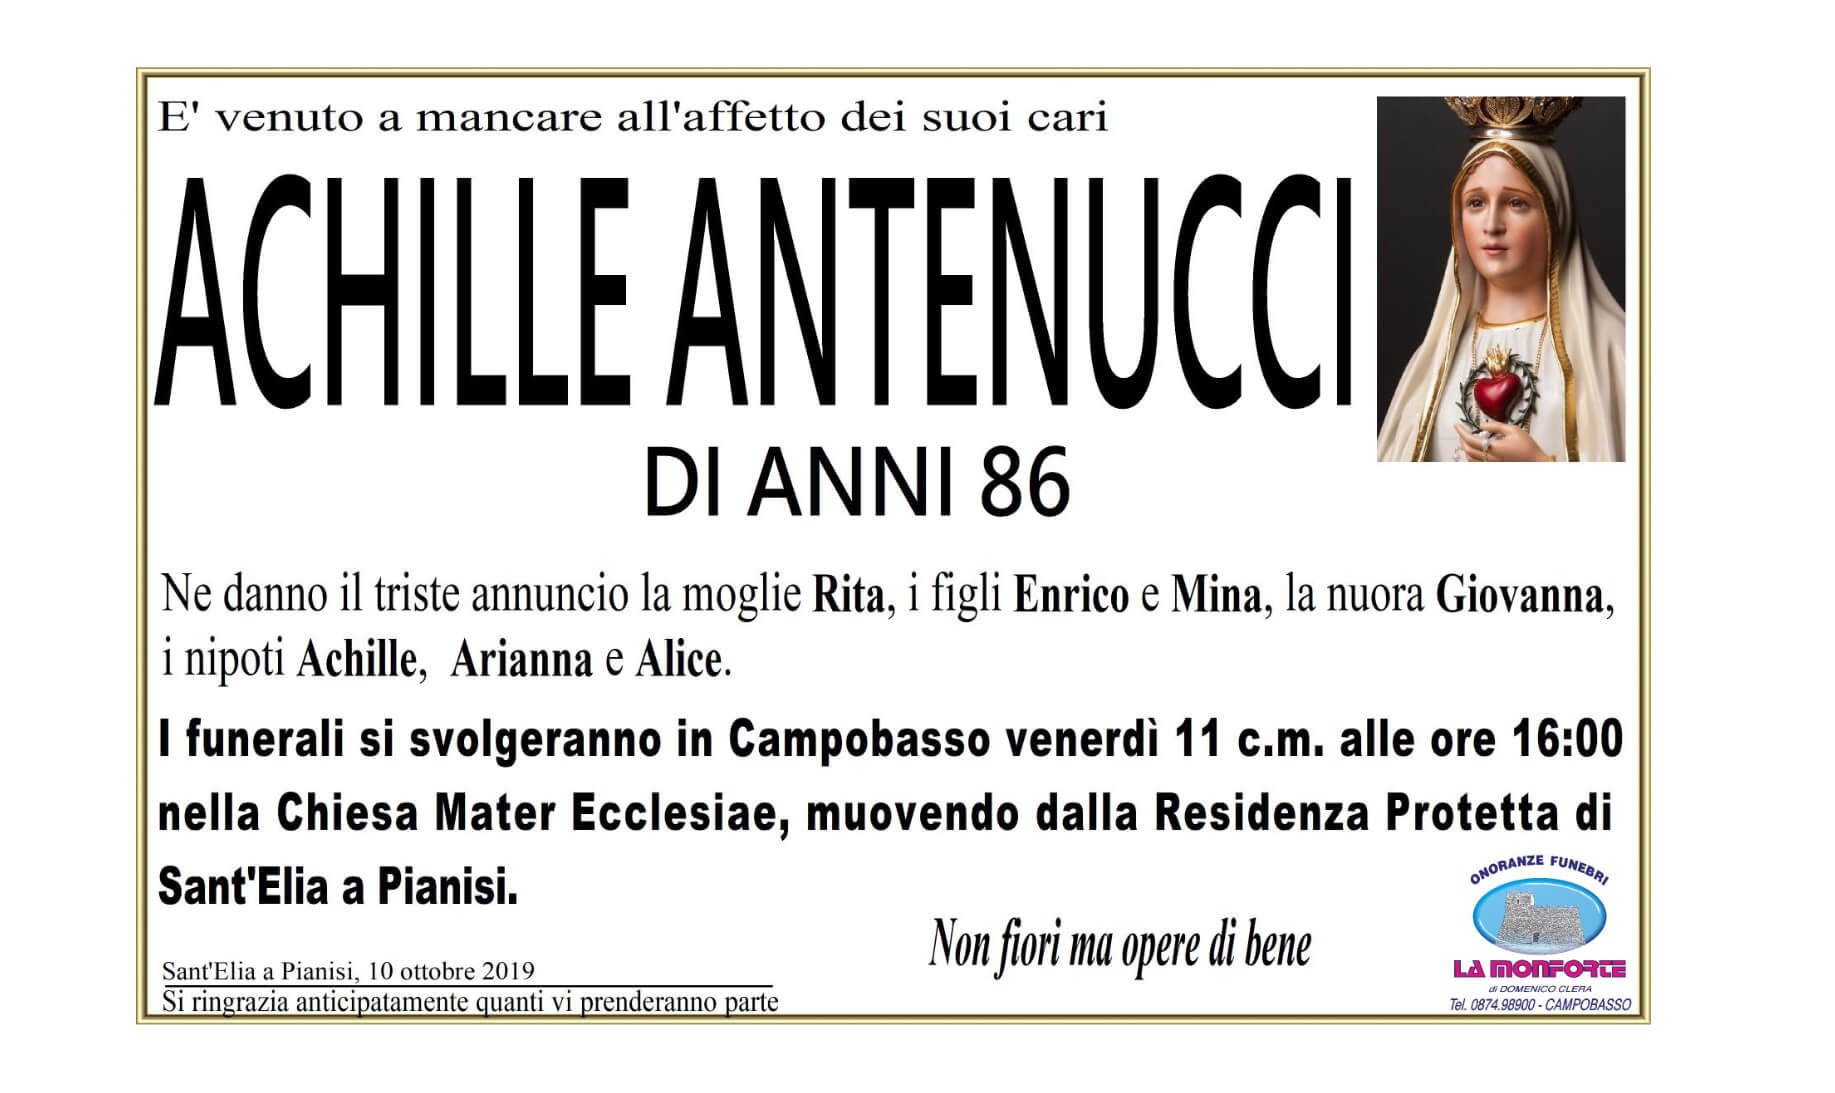 Achille Antenucci